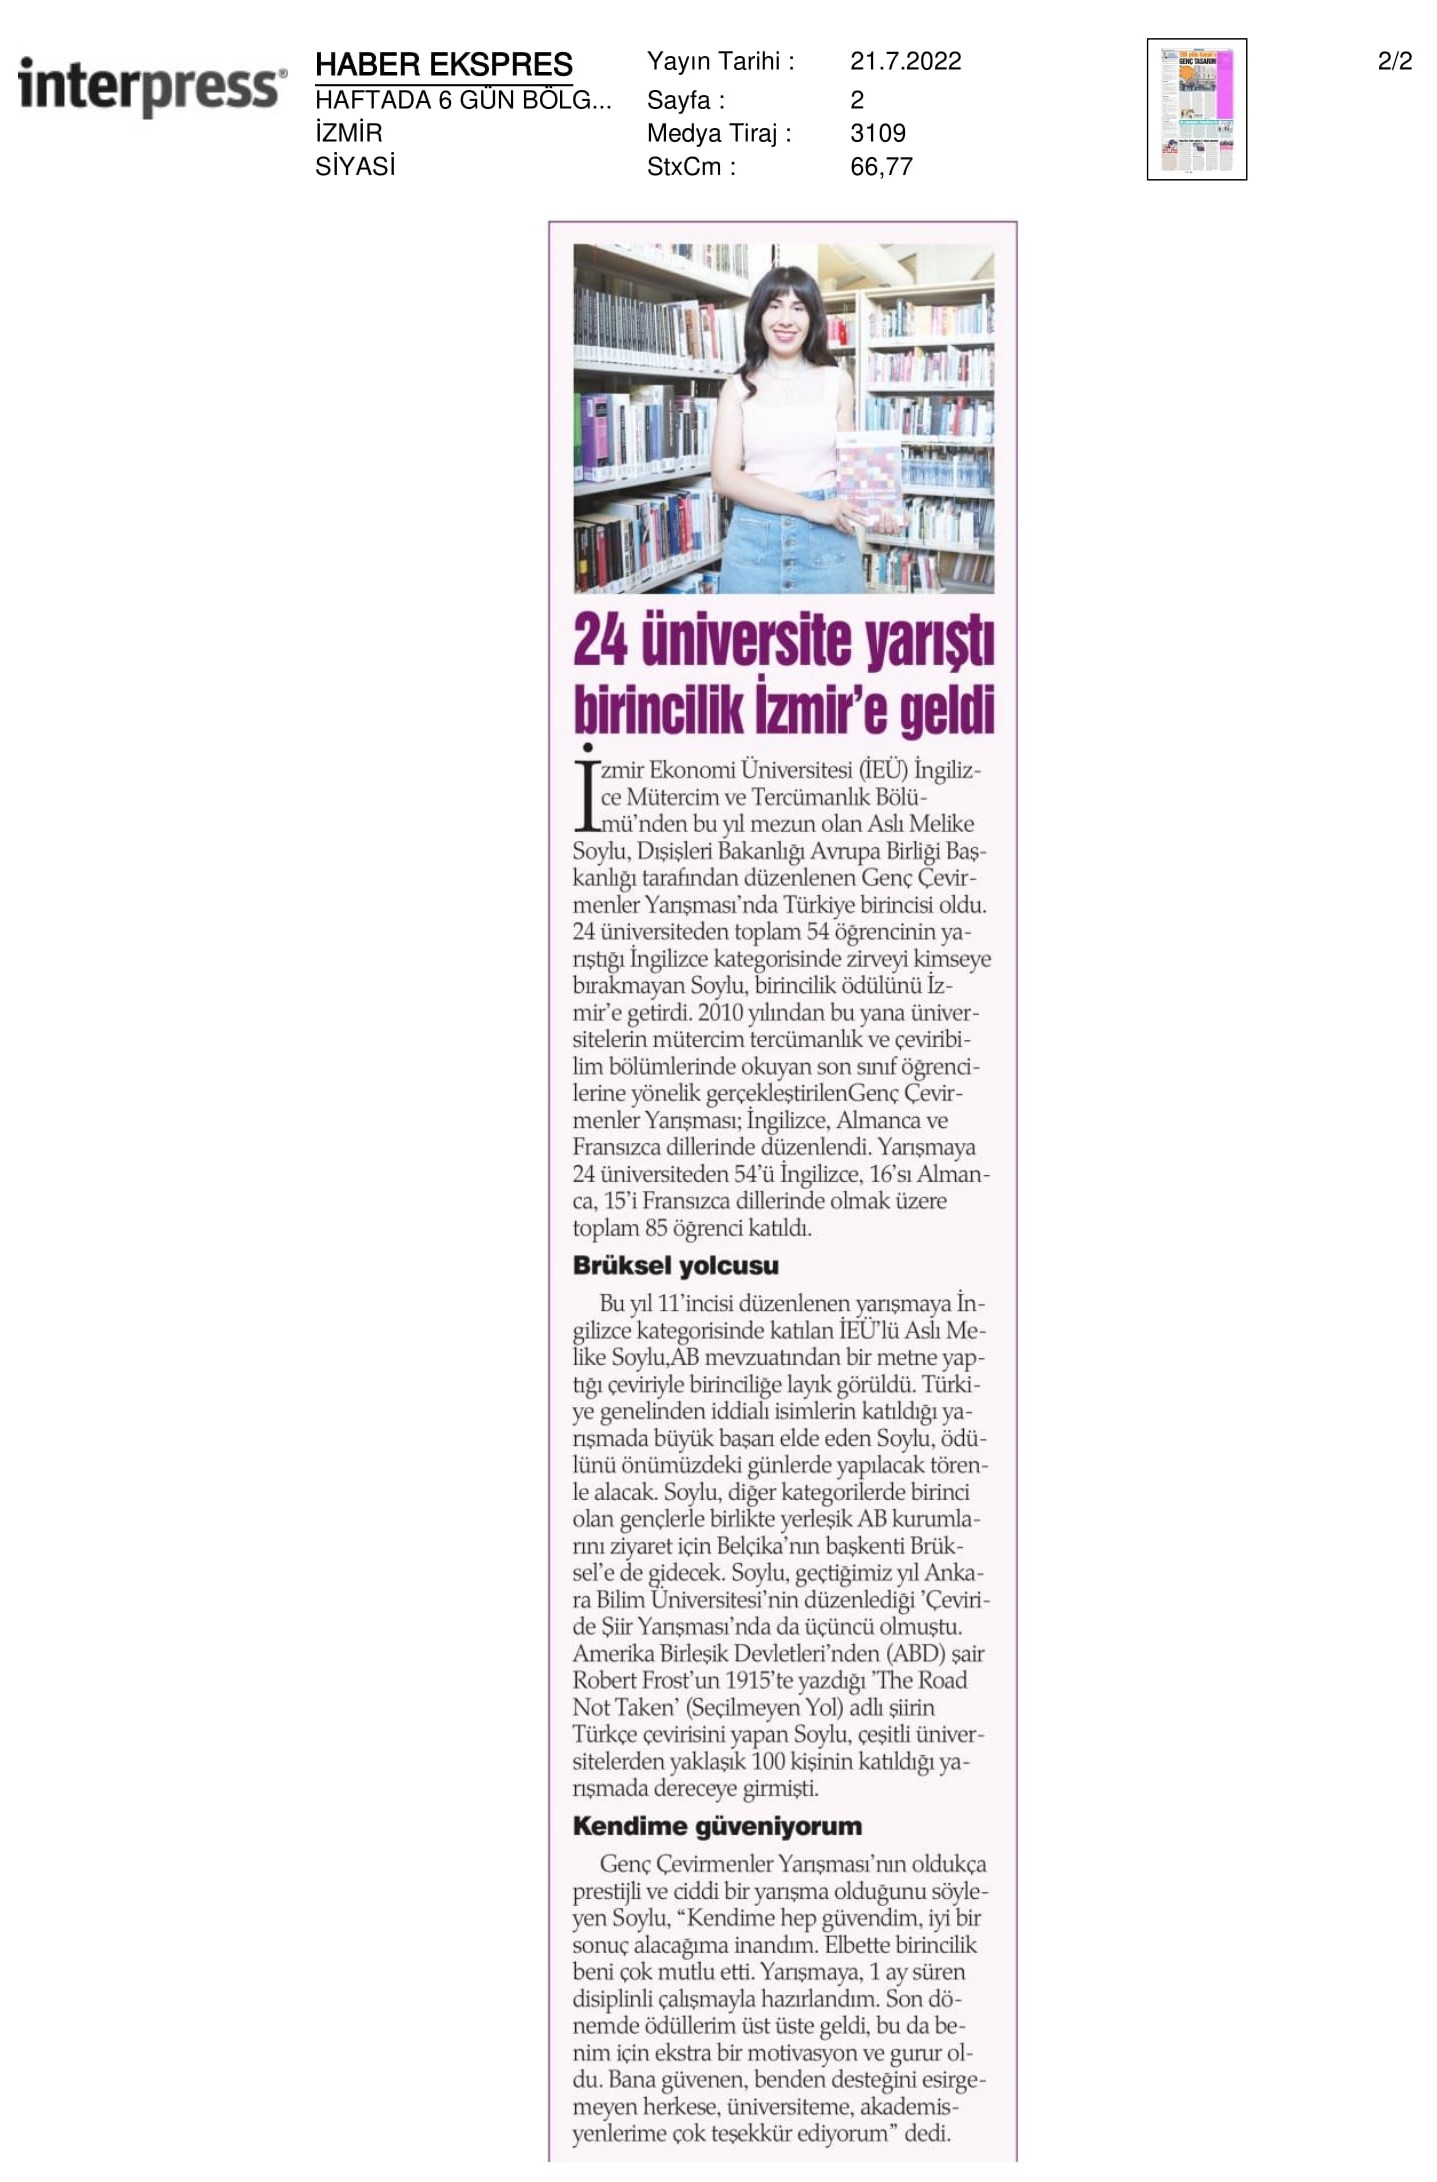 24 üniversite yarıştı, birincilik İzmir’e geldi